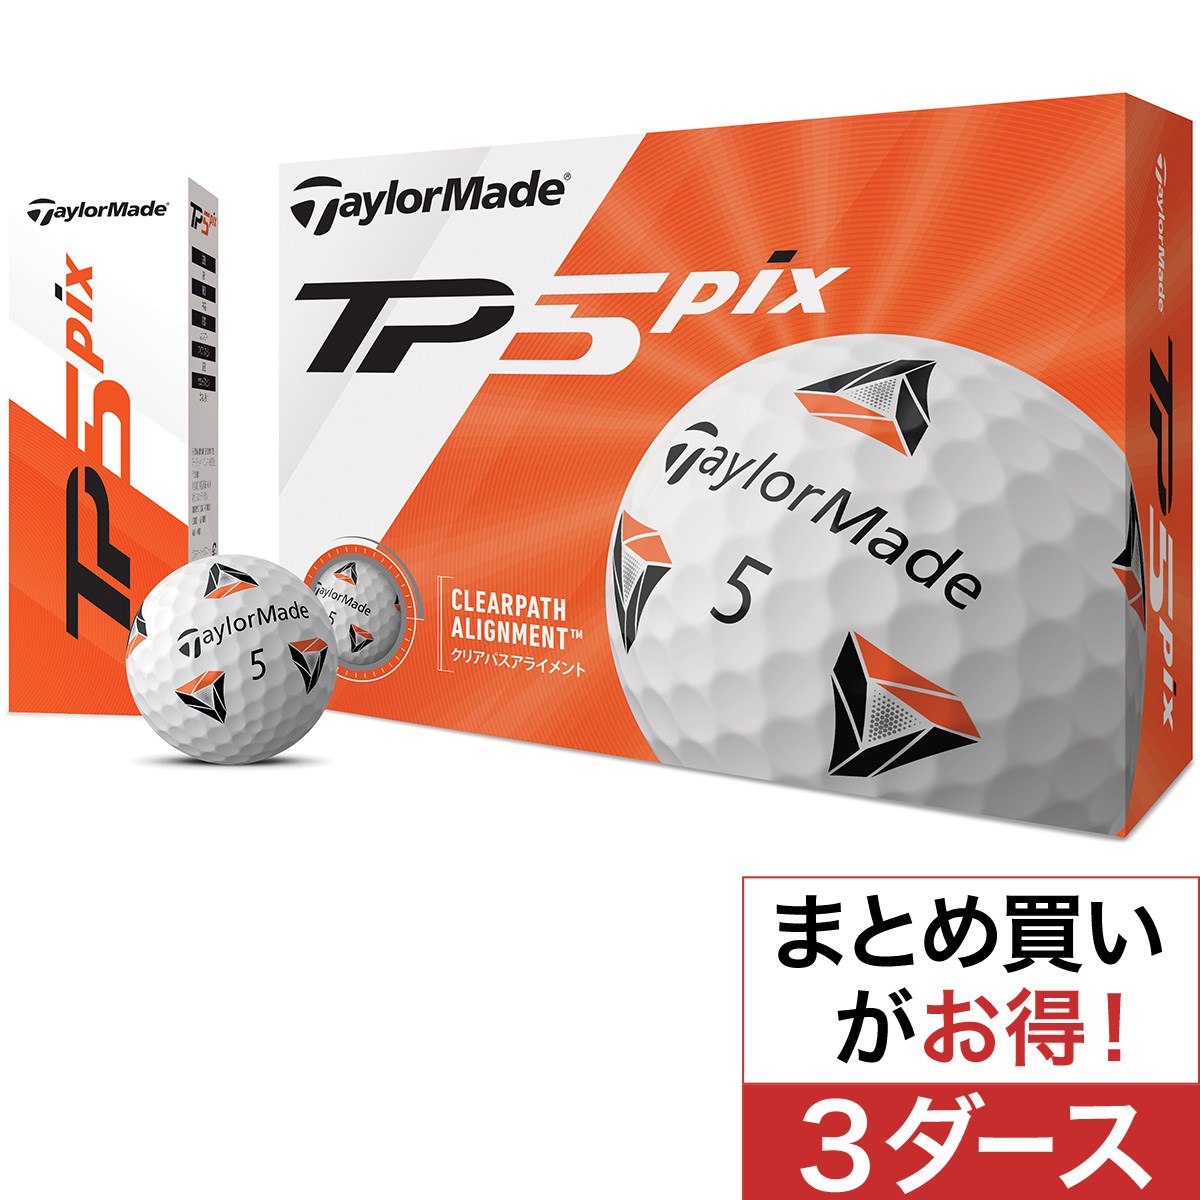 テーラーメイド(Taylor Made) TP5 pix ボール 3ダースセット 